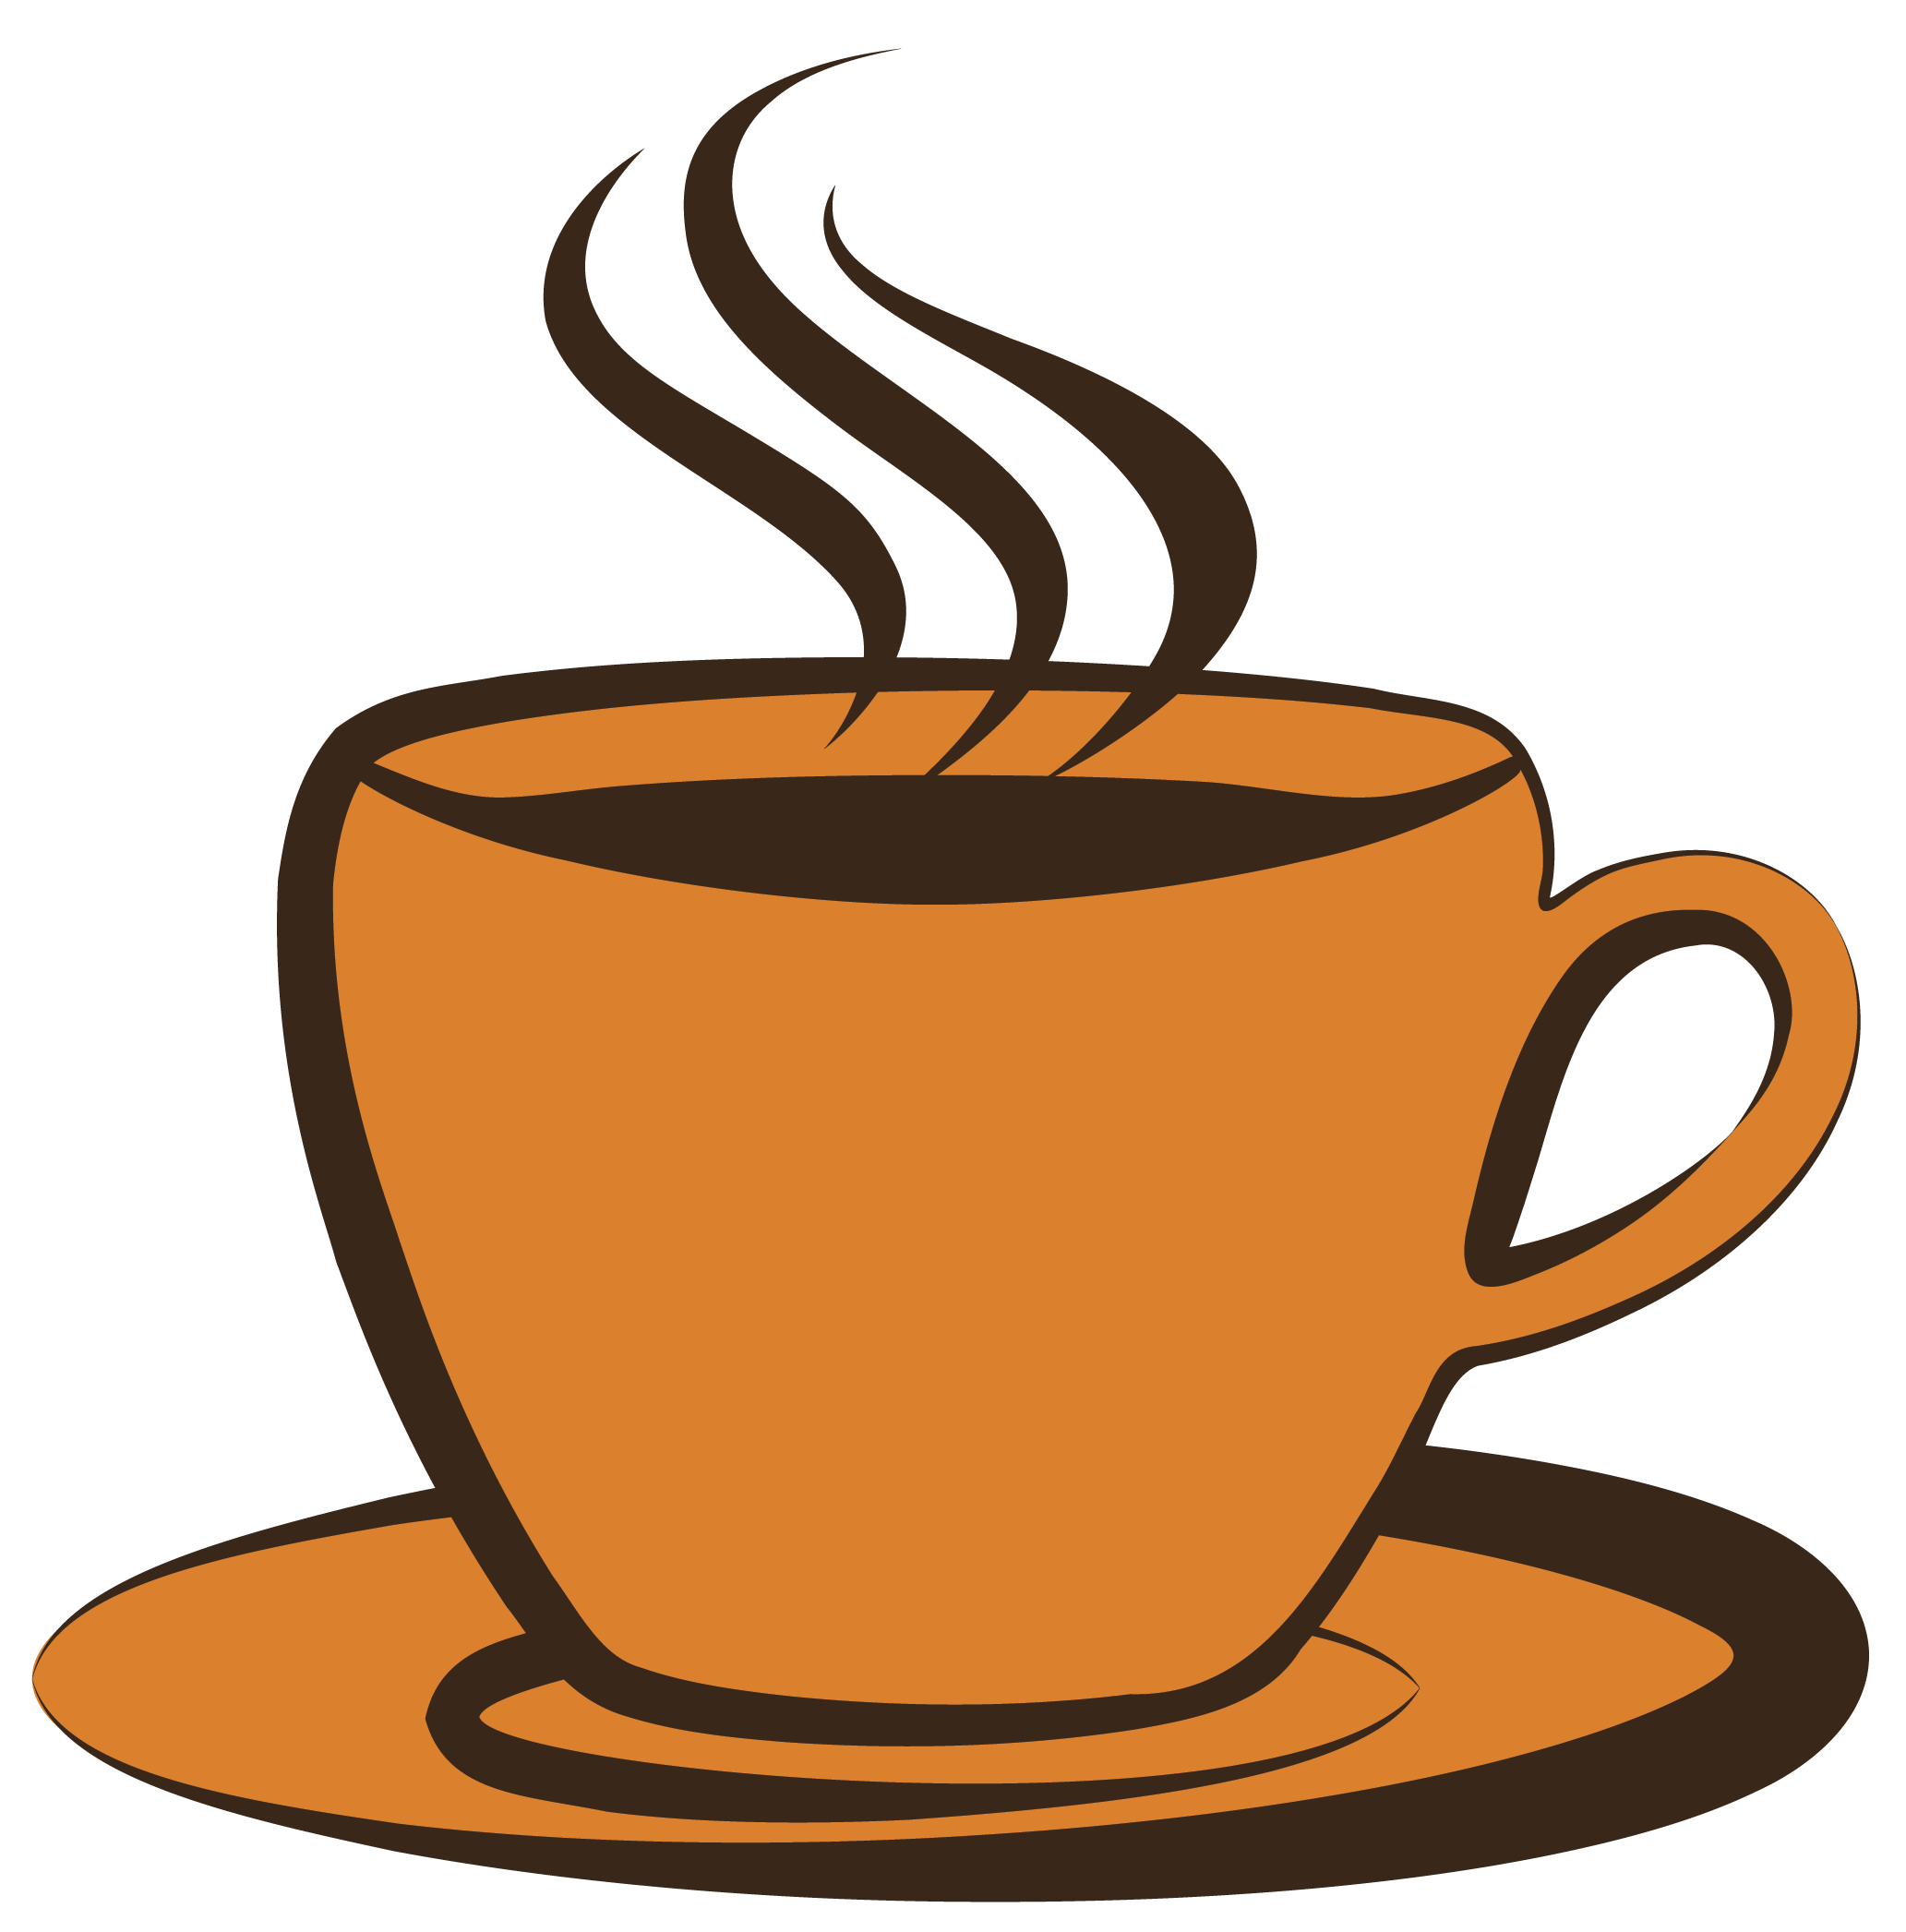 Coffee Mug Image